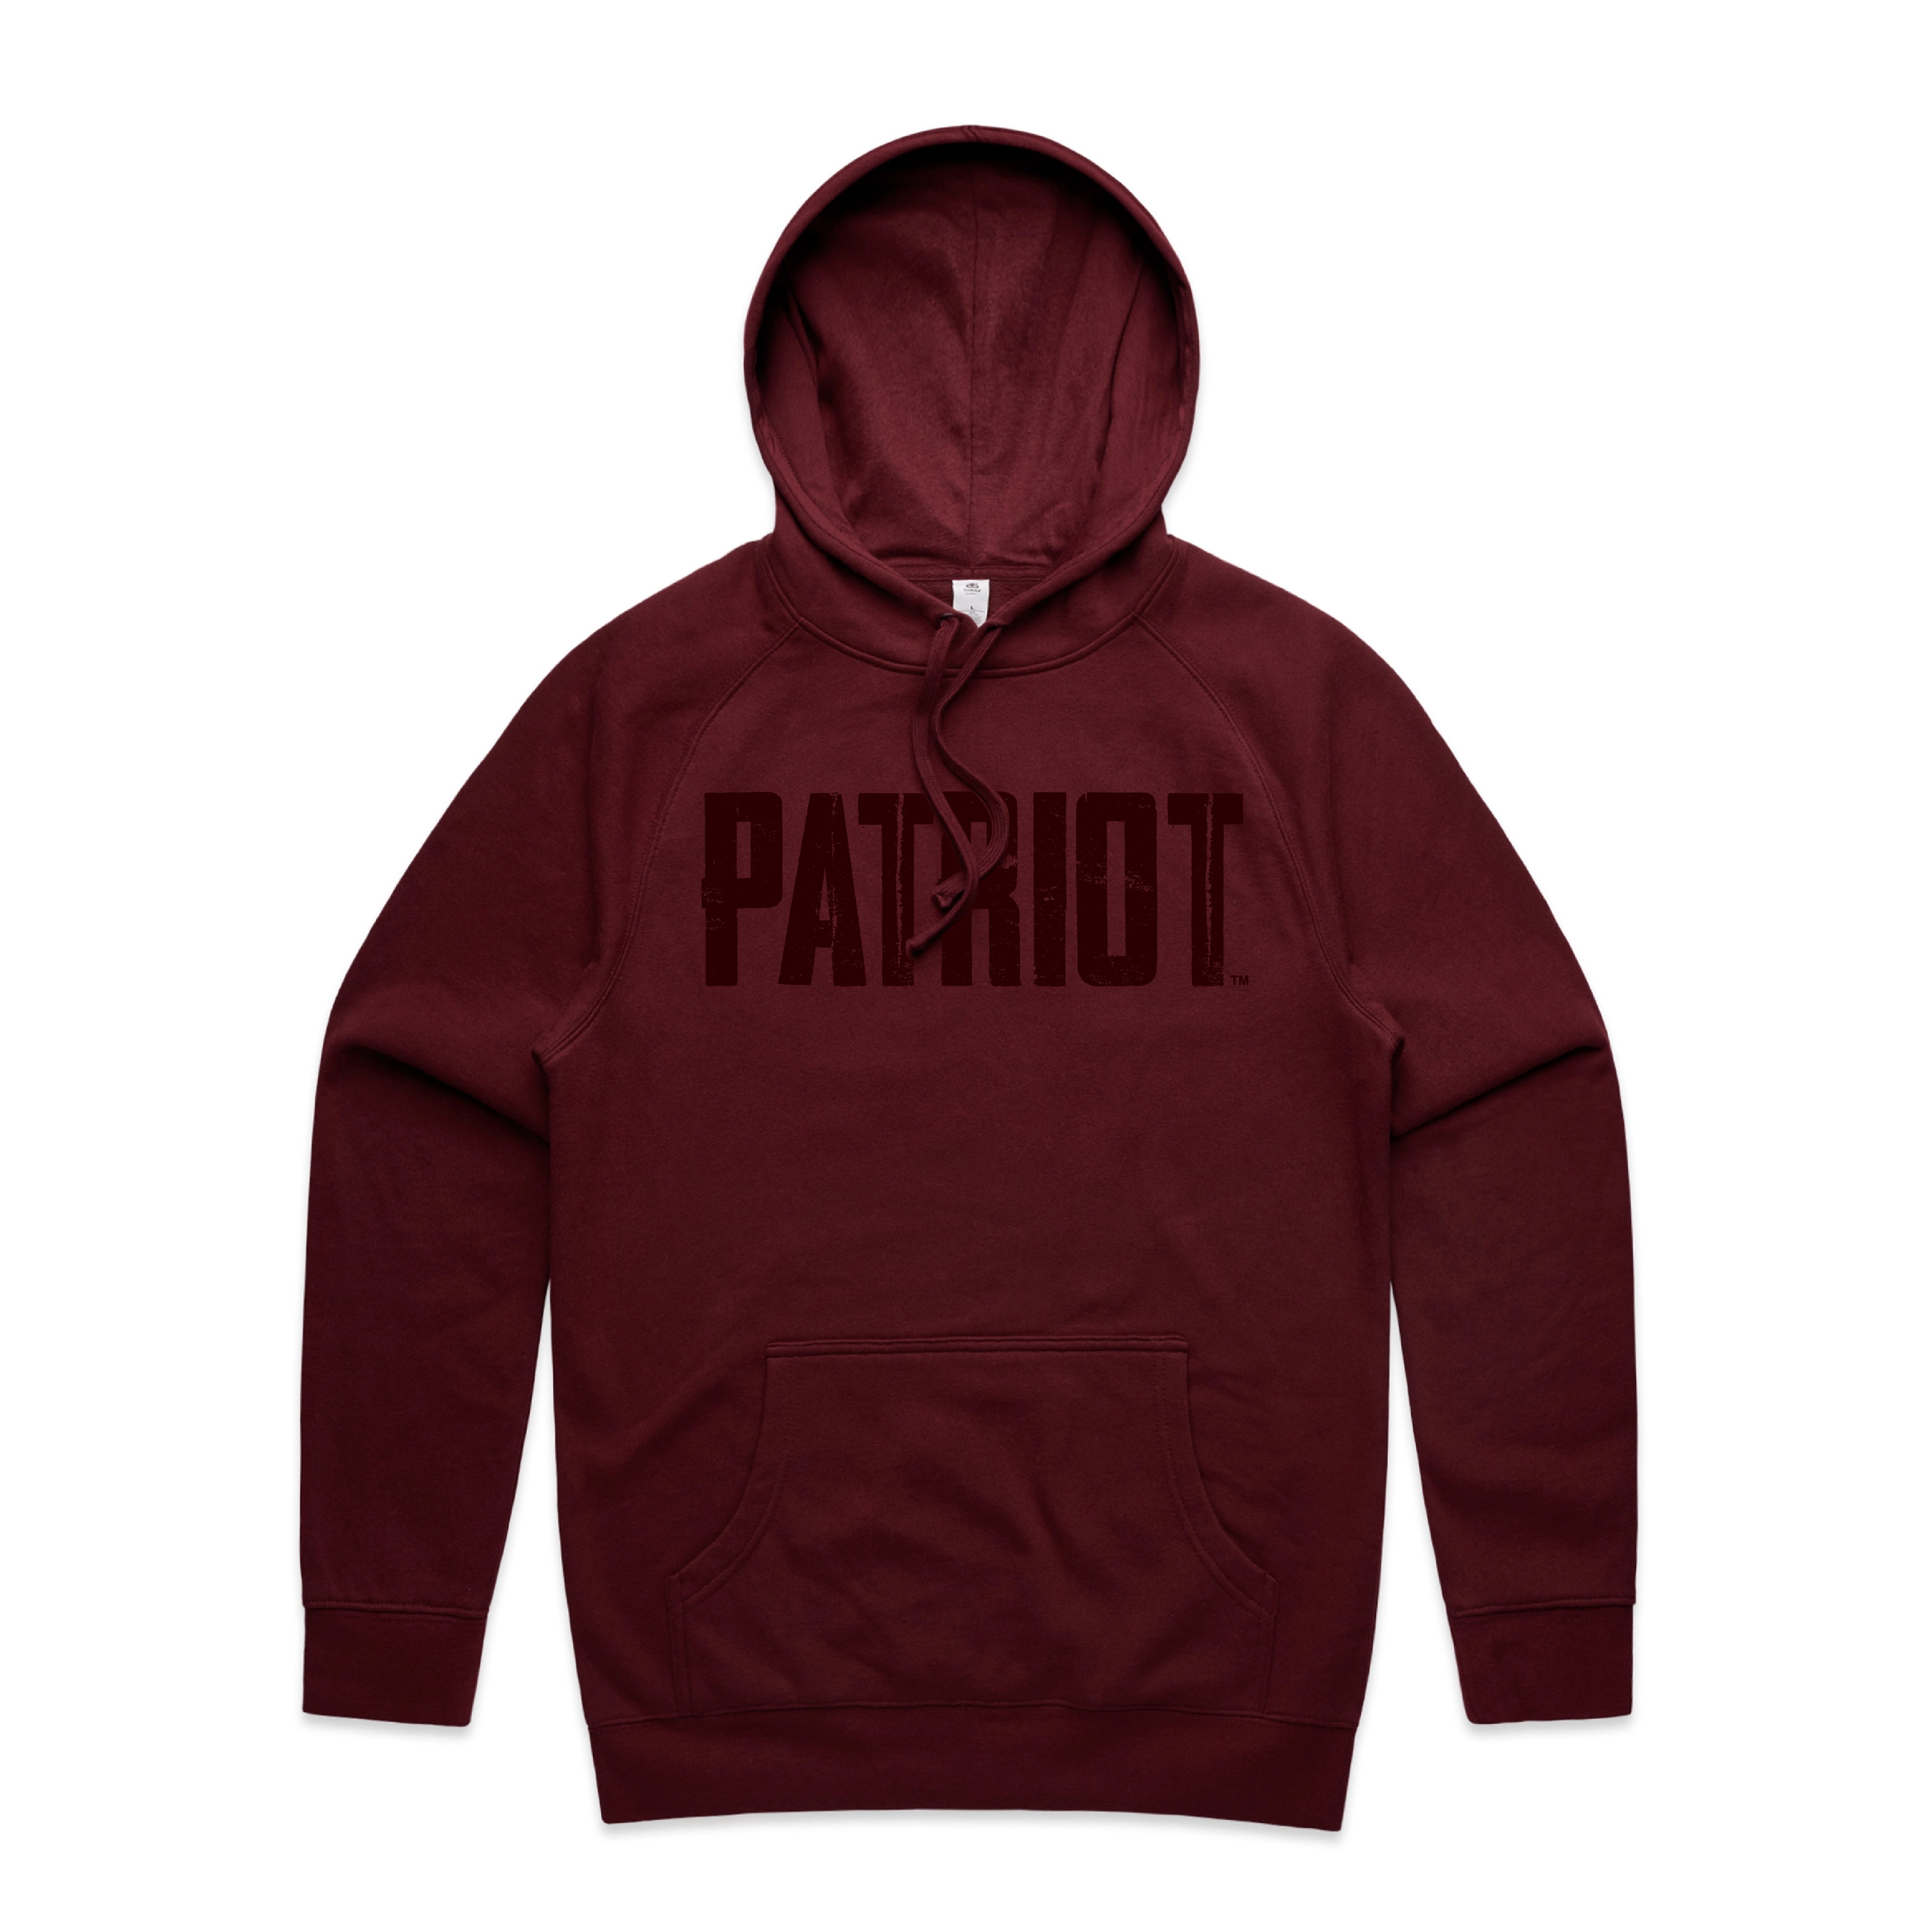 Canadian Patriot Hoodie - Maroon